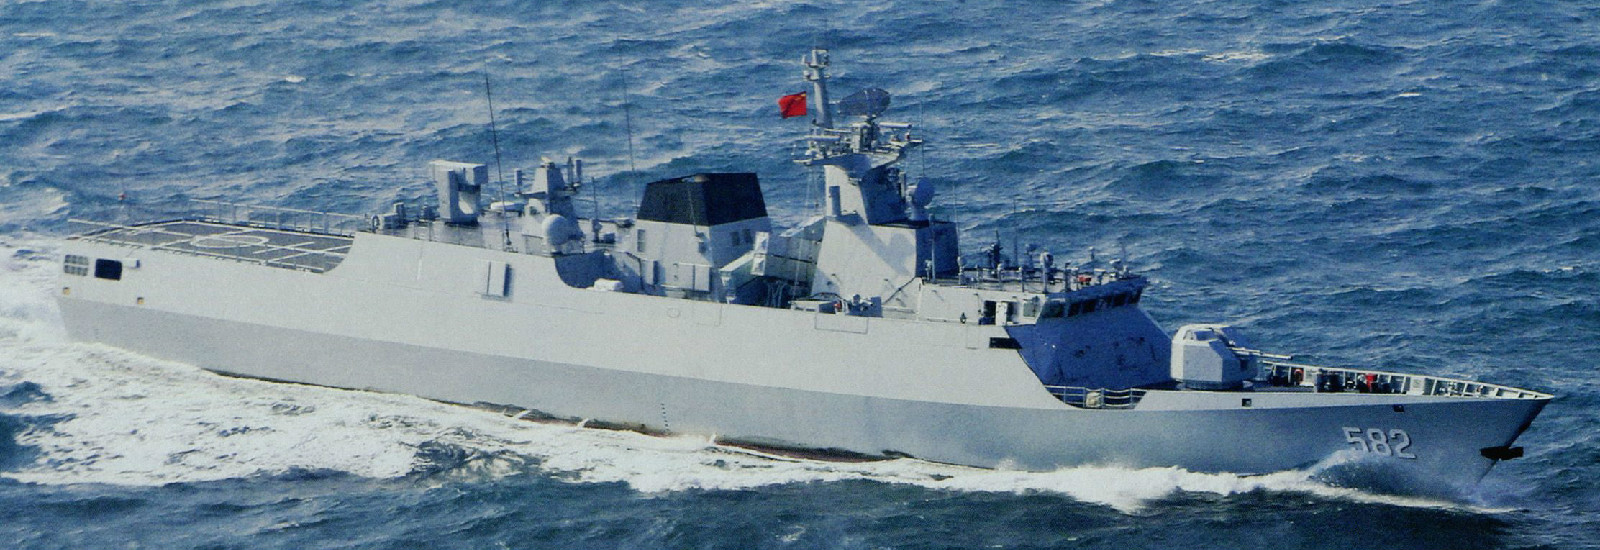 PF-582蚌埠艦